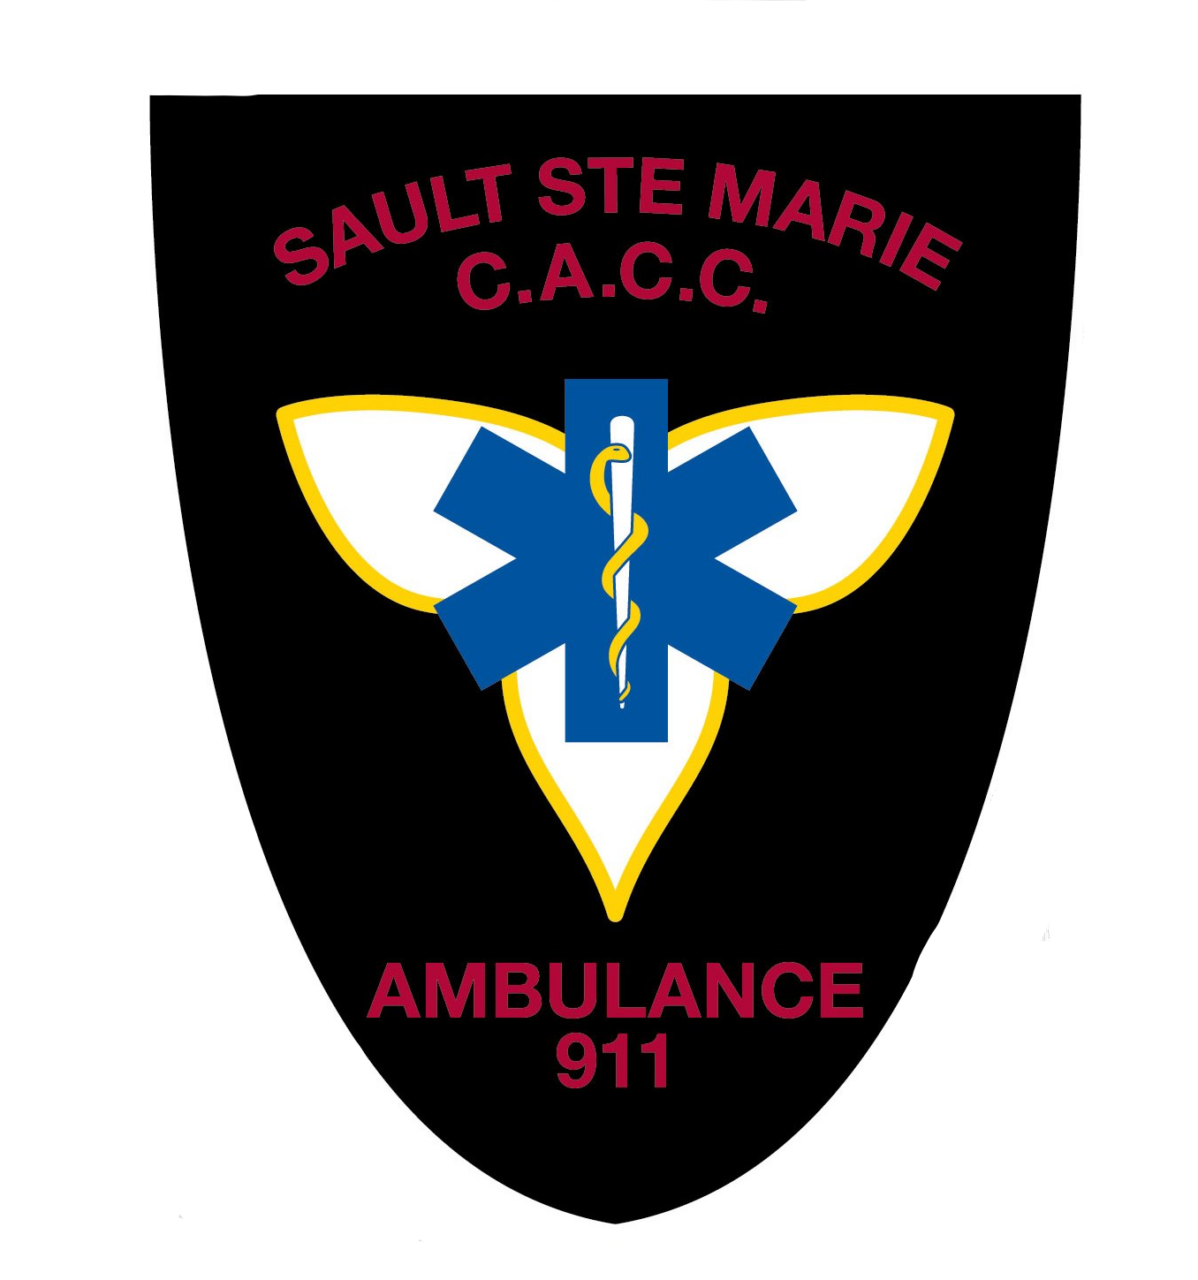 Sault Ste. Marie C.A.C.C Ambulance 9-1-1 crest.